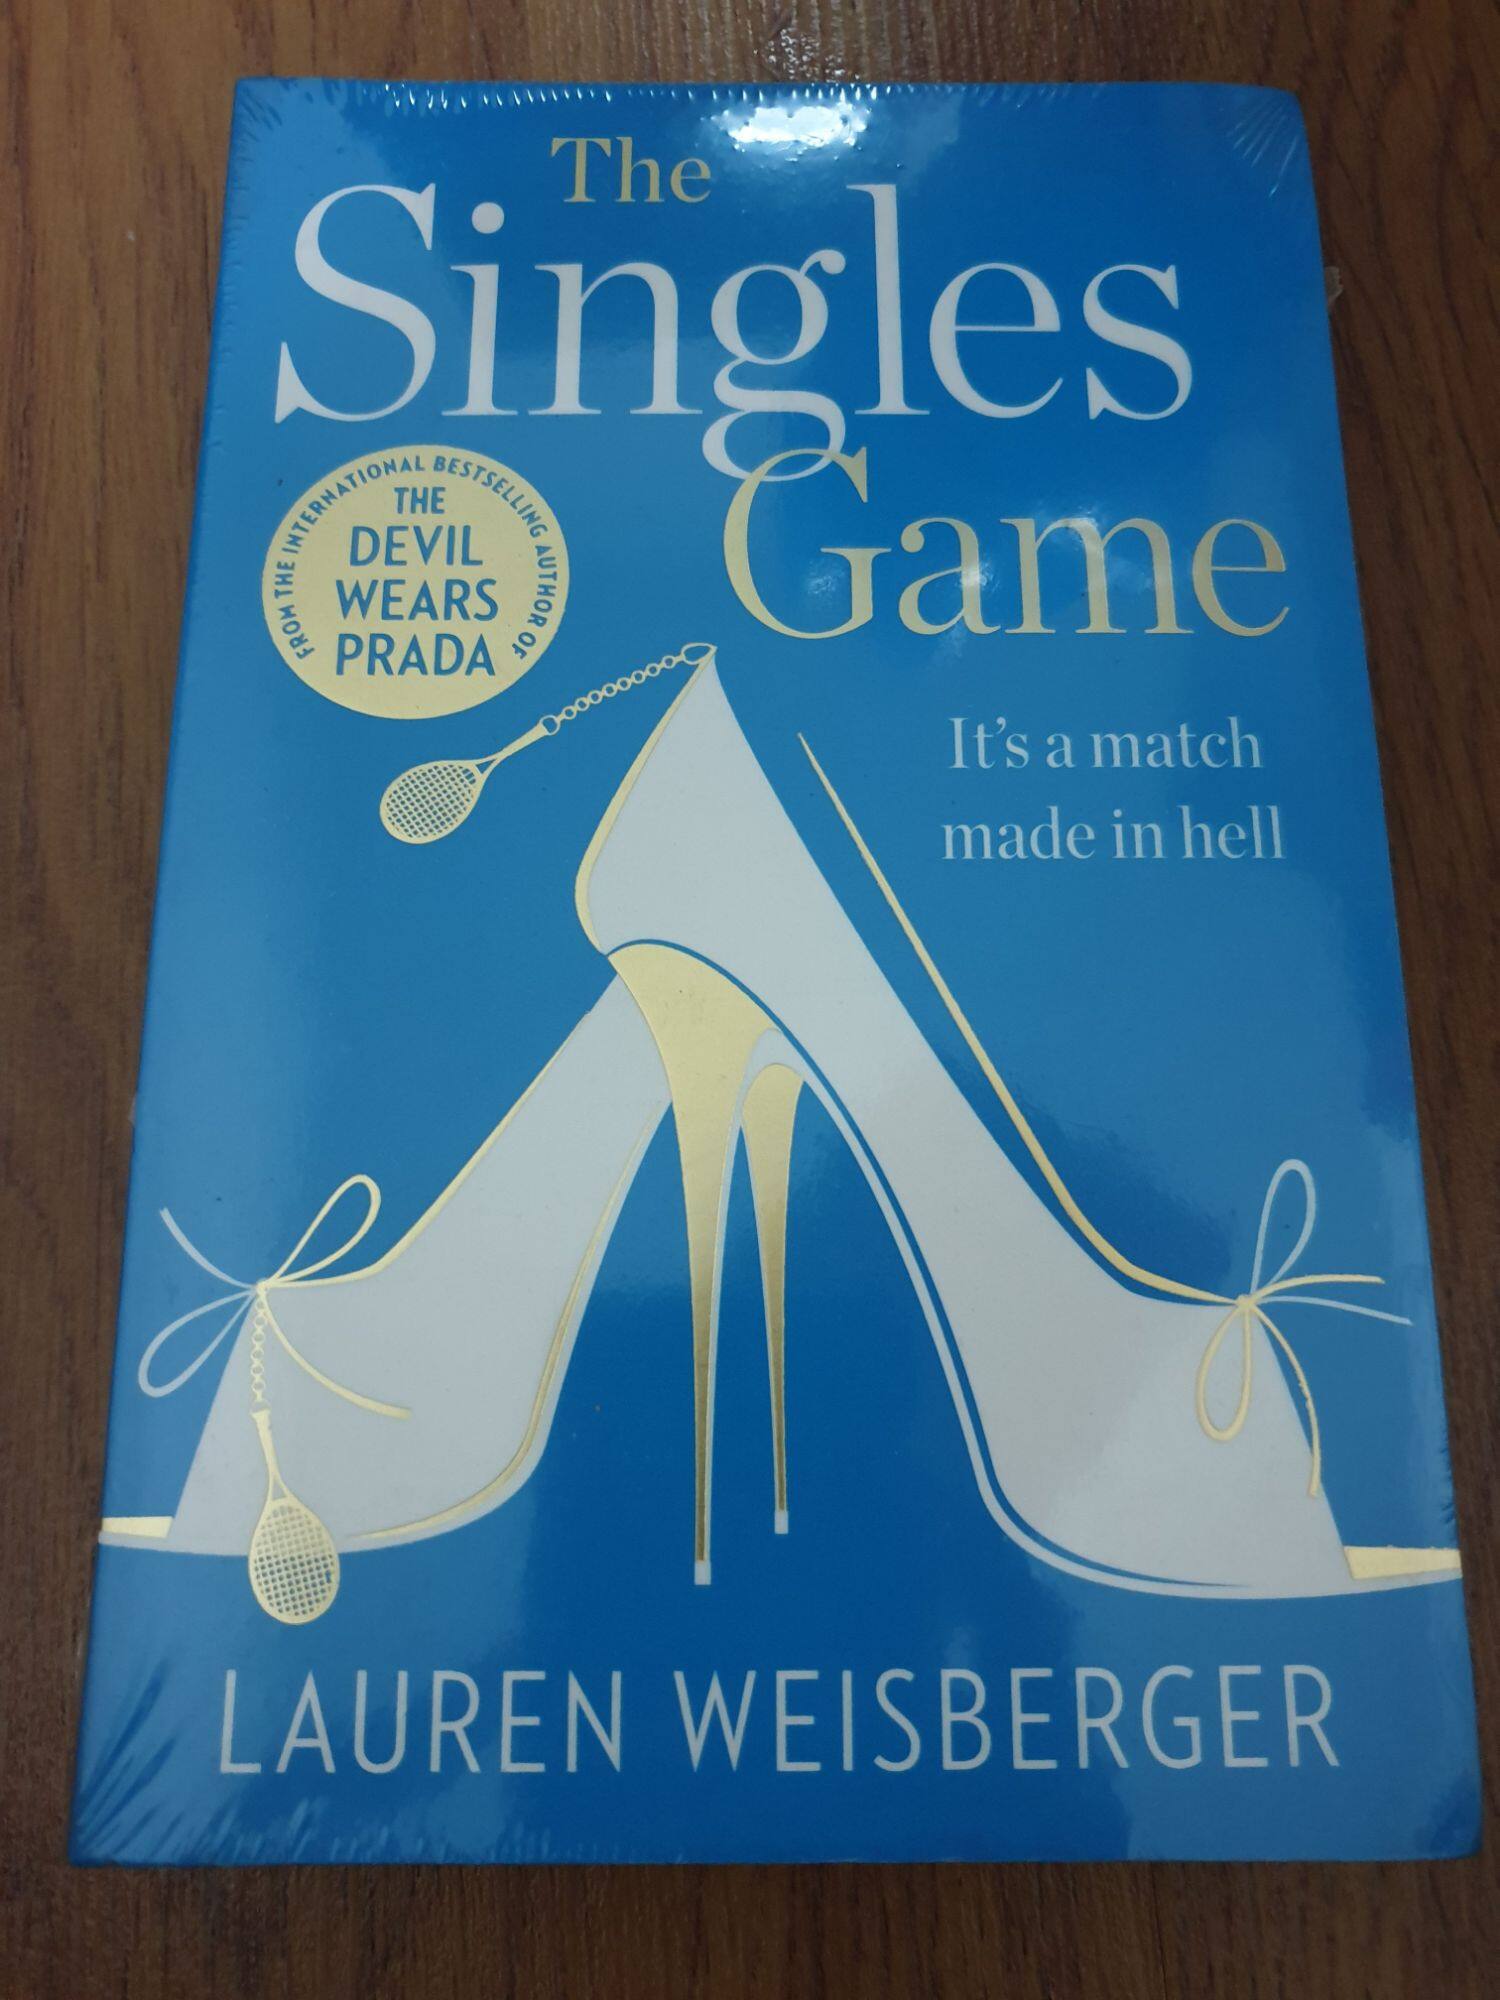 (ในซีล) นิยายภาษาอังกฤษ /The Singles Game/ by LAUREN WEISBERGER